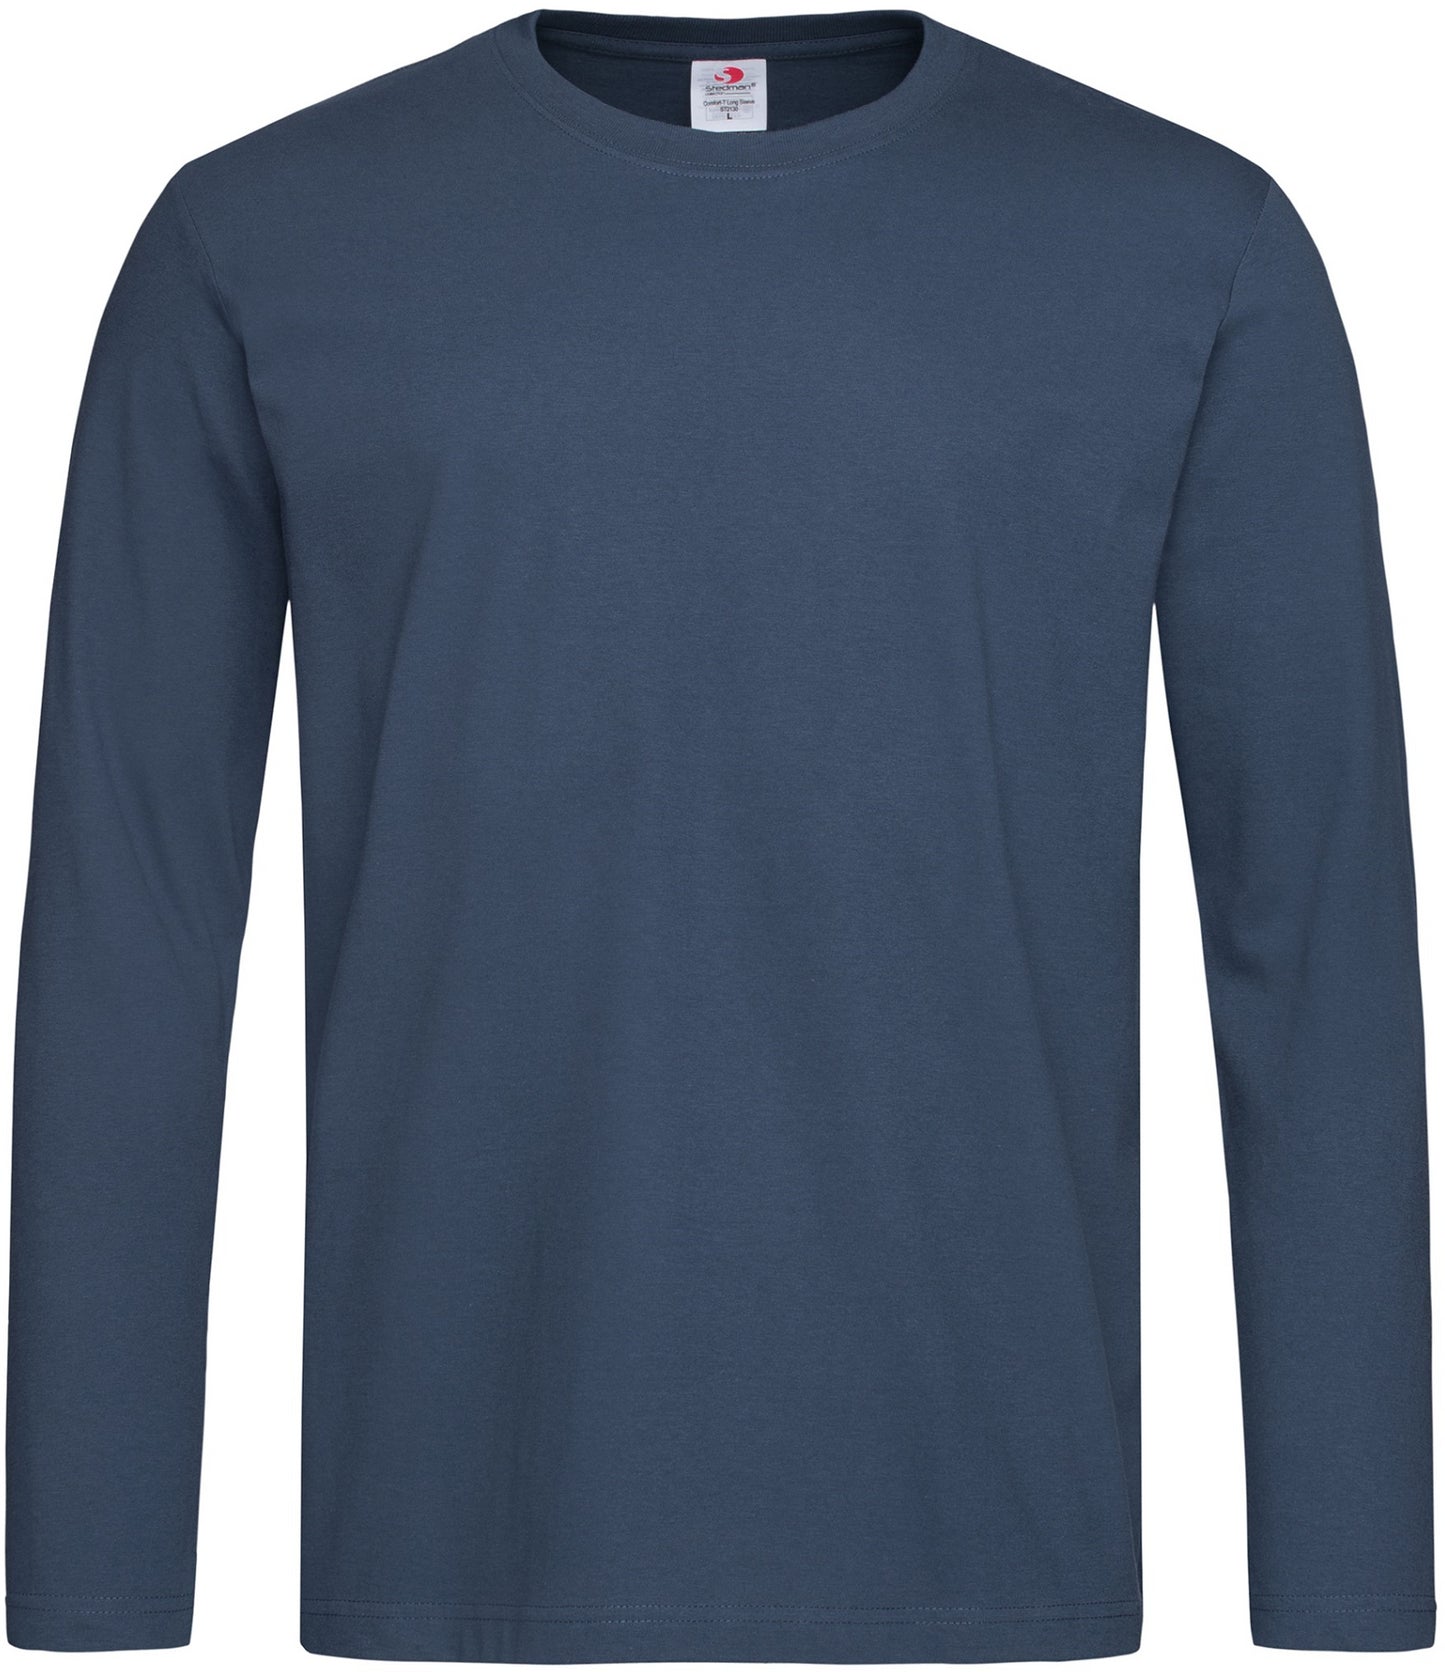 Stedman ST2130 Comfort Long Sleeve T-Shirt